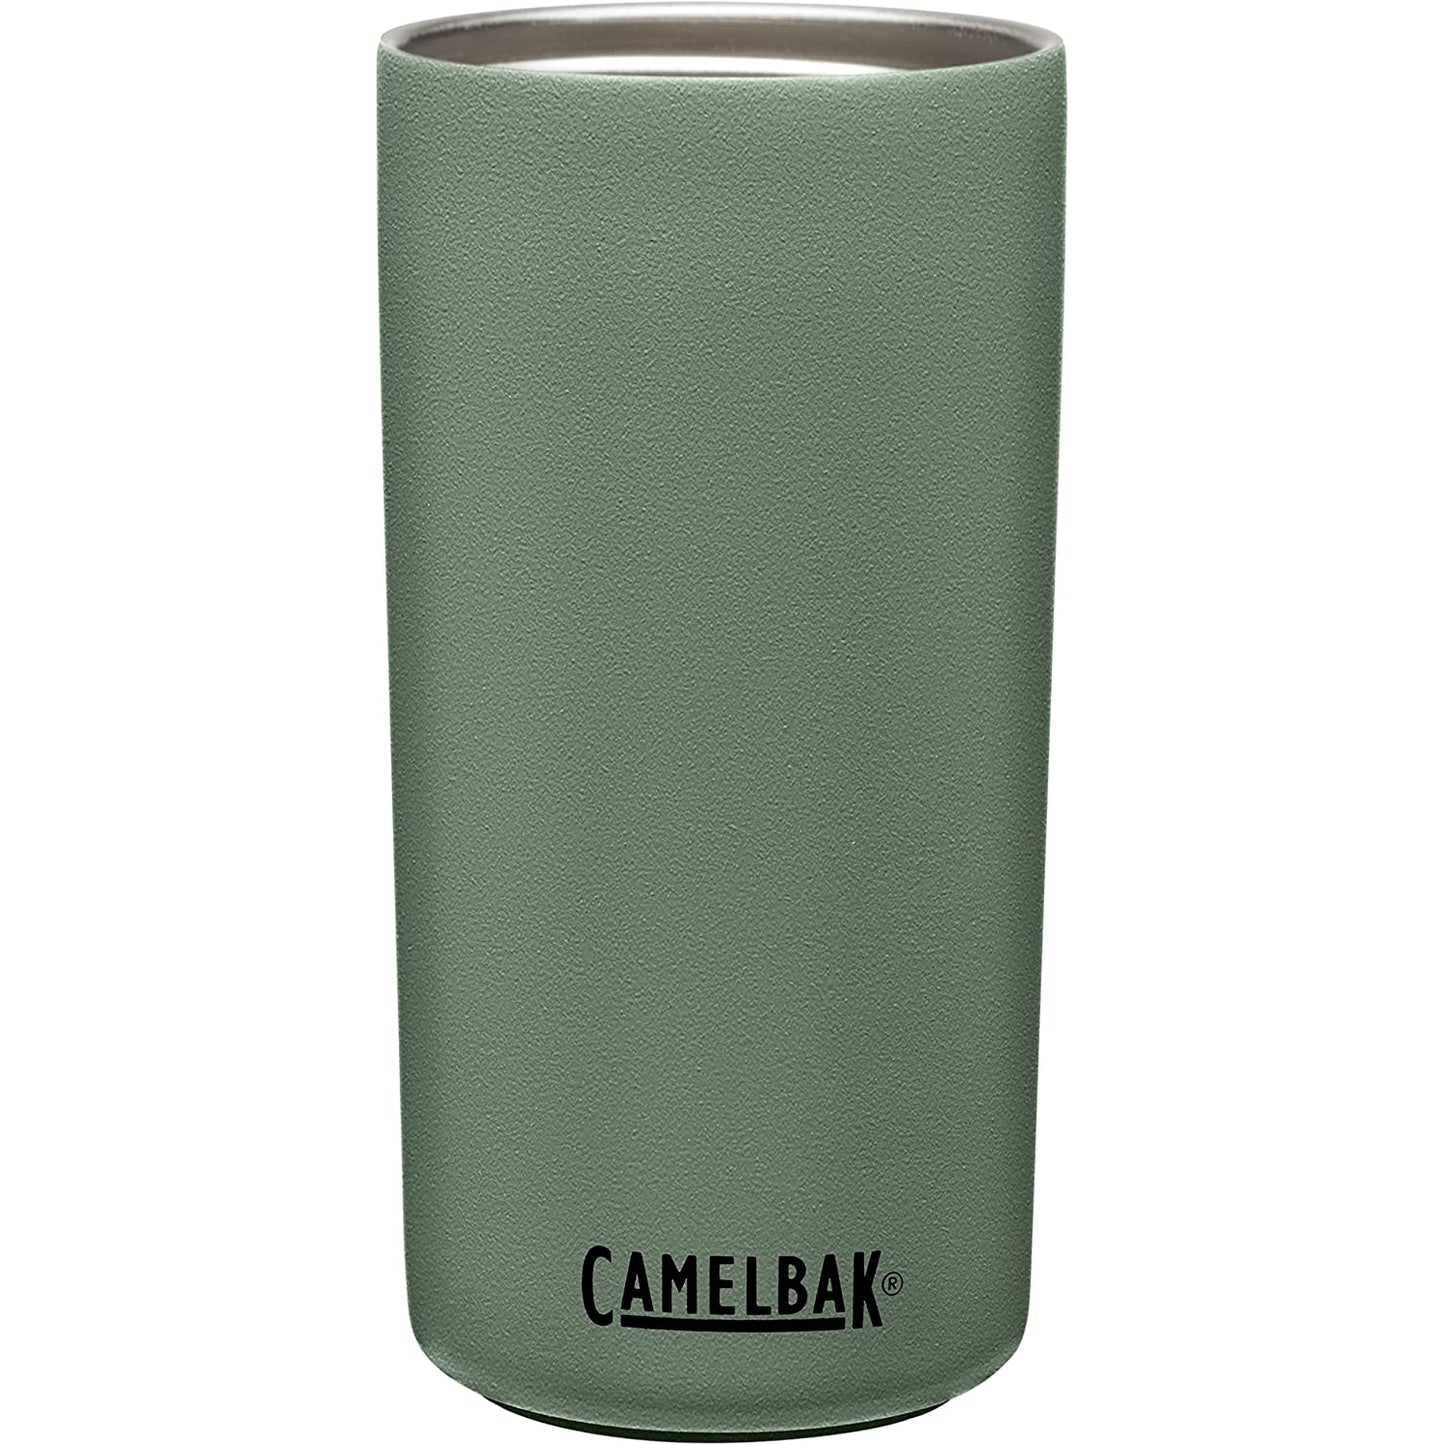 Camelbak MultiBev SST Vacuum Stainless Bottle, Moss/Mint - 22oz - Best Price online Prokicksports.com